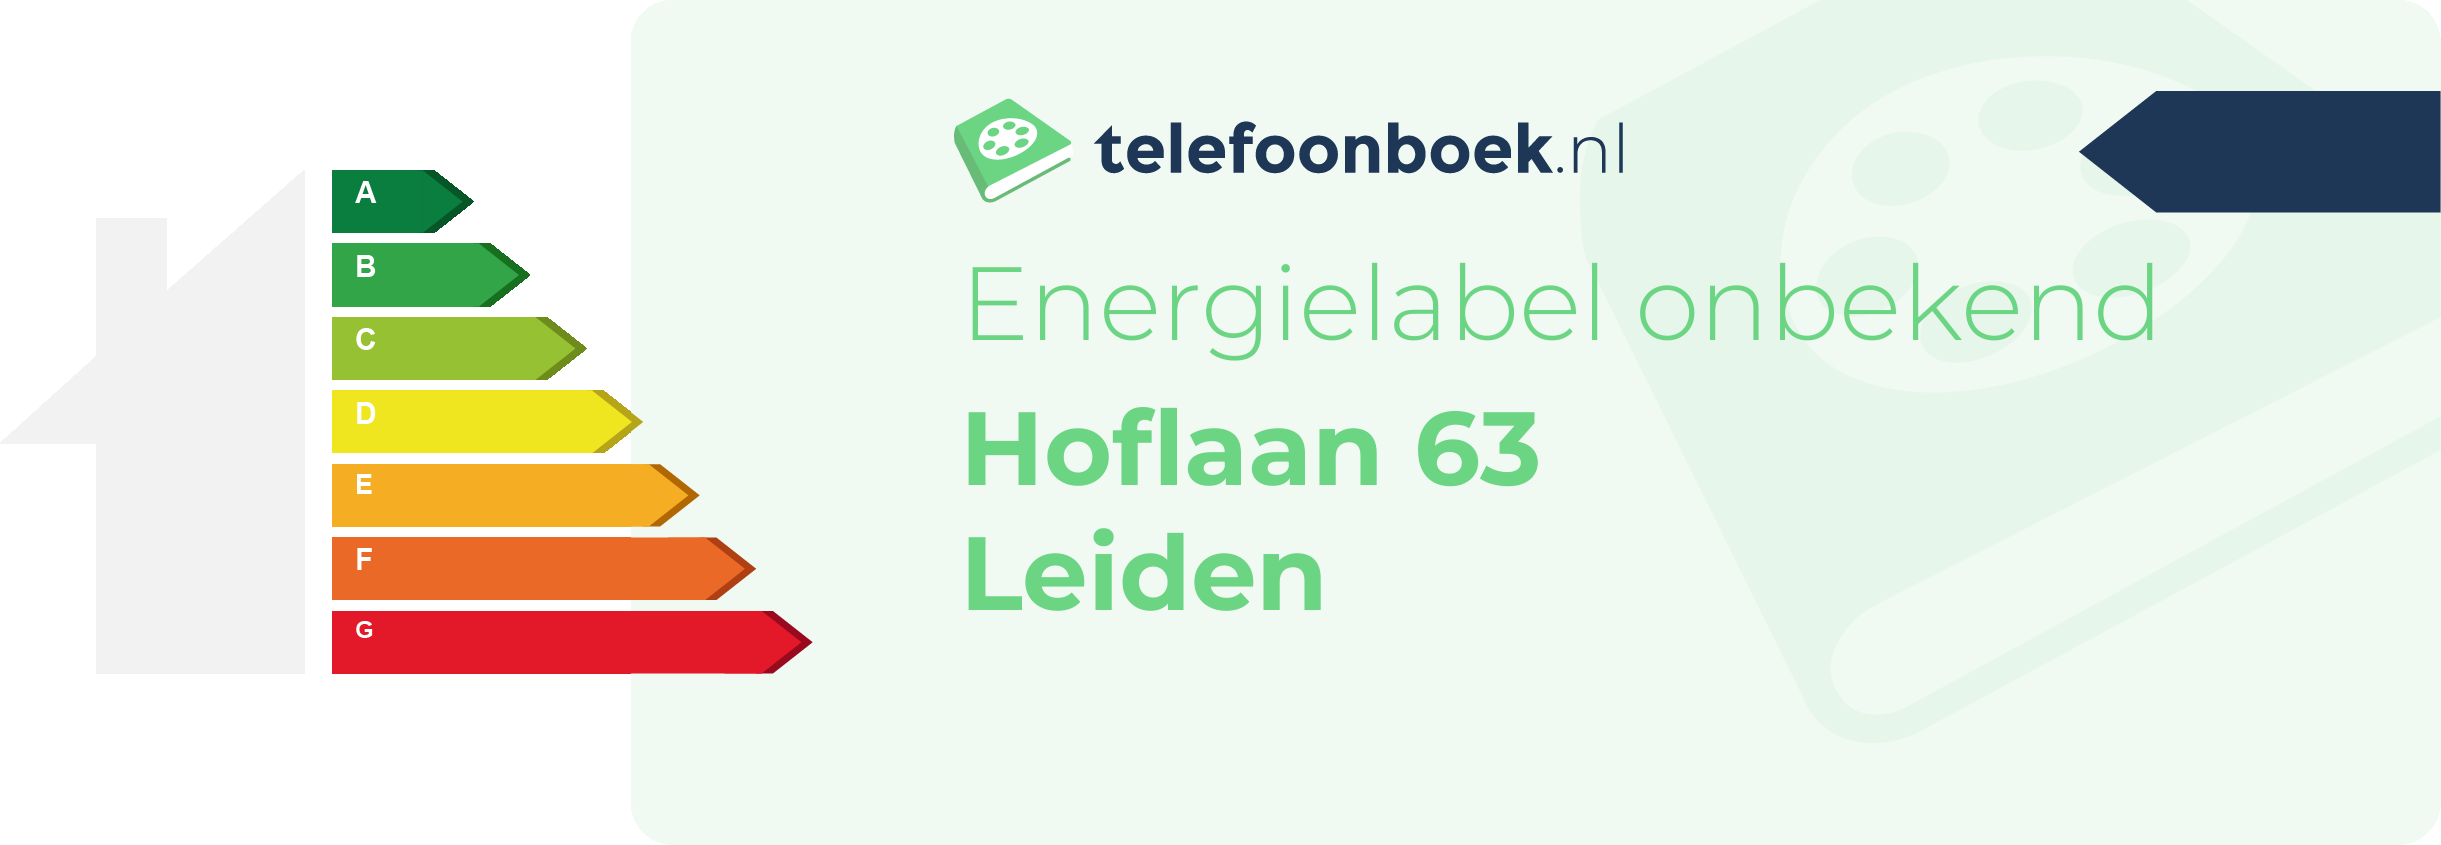 Energielabel Hoflaan 63 Leiden